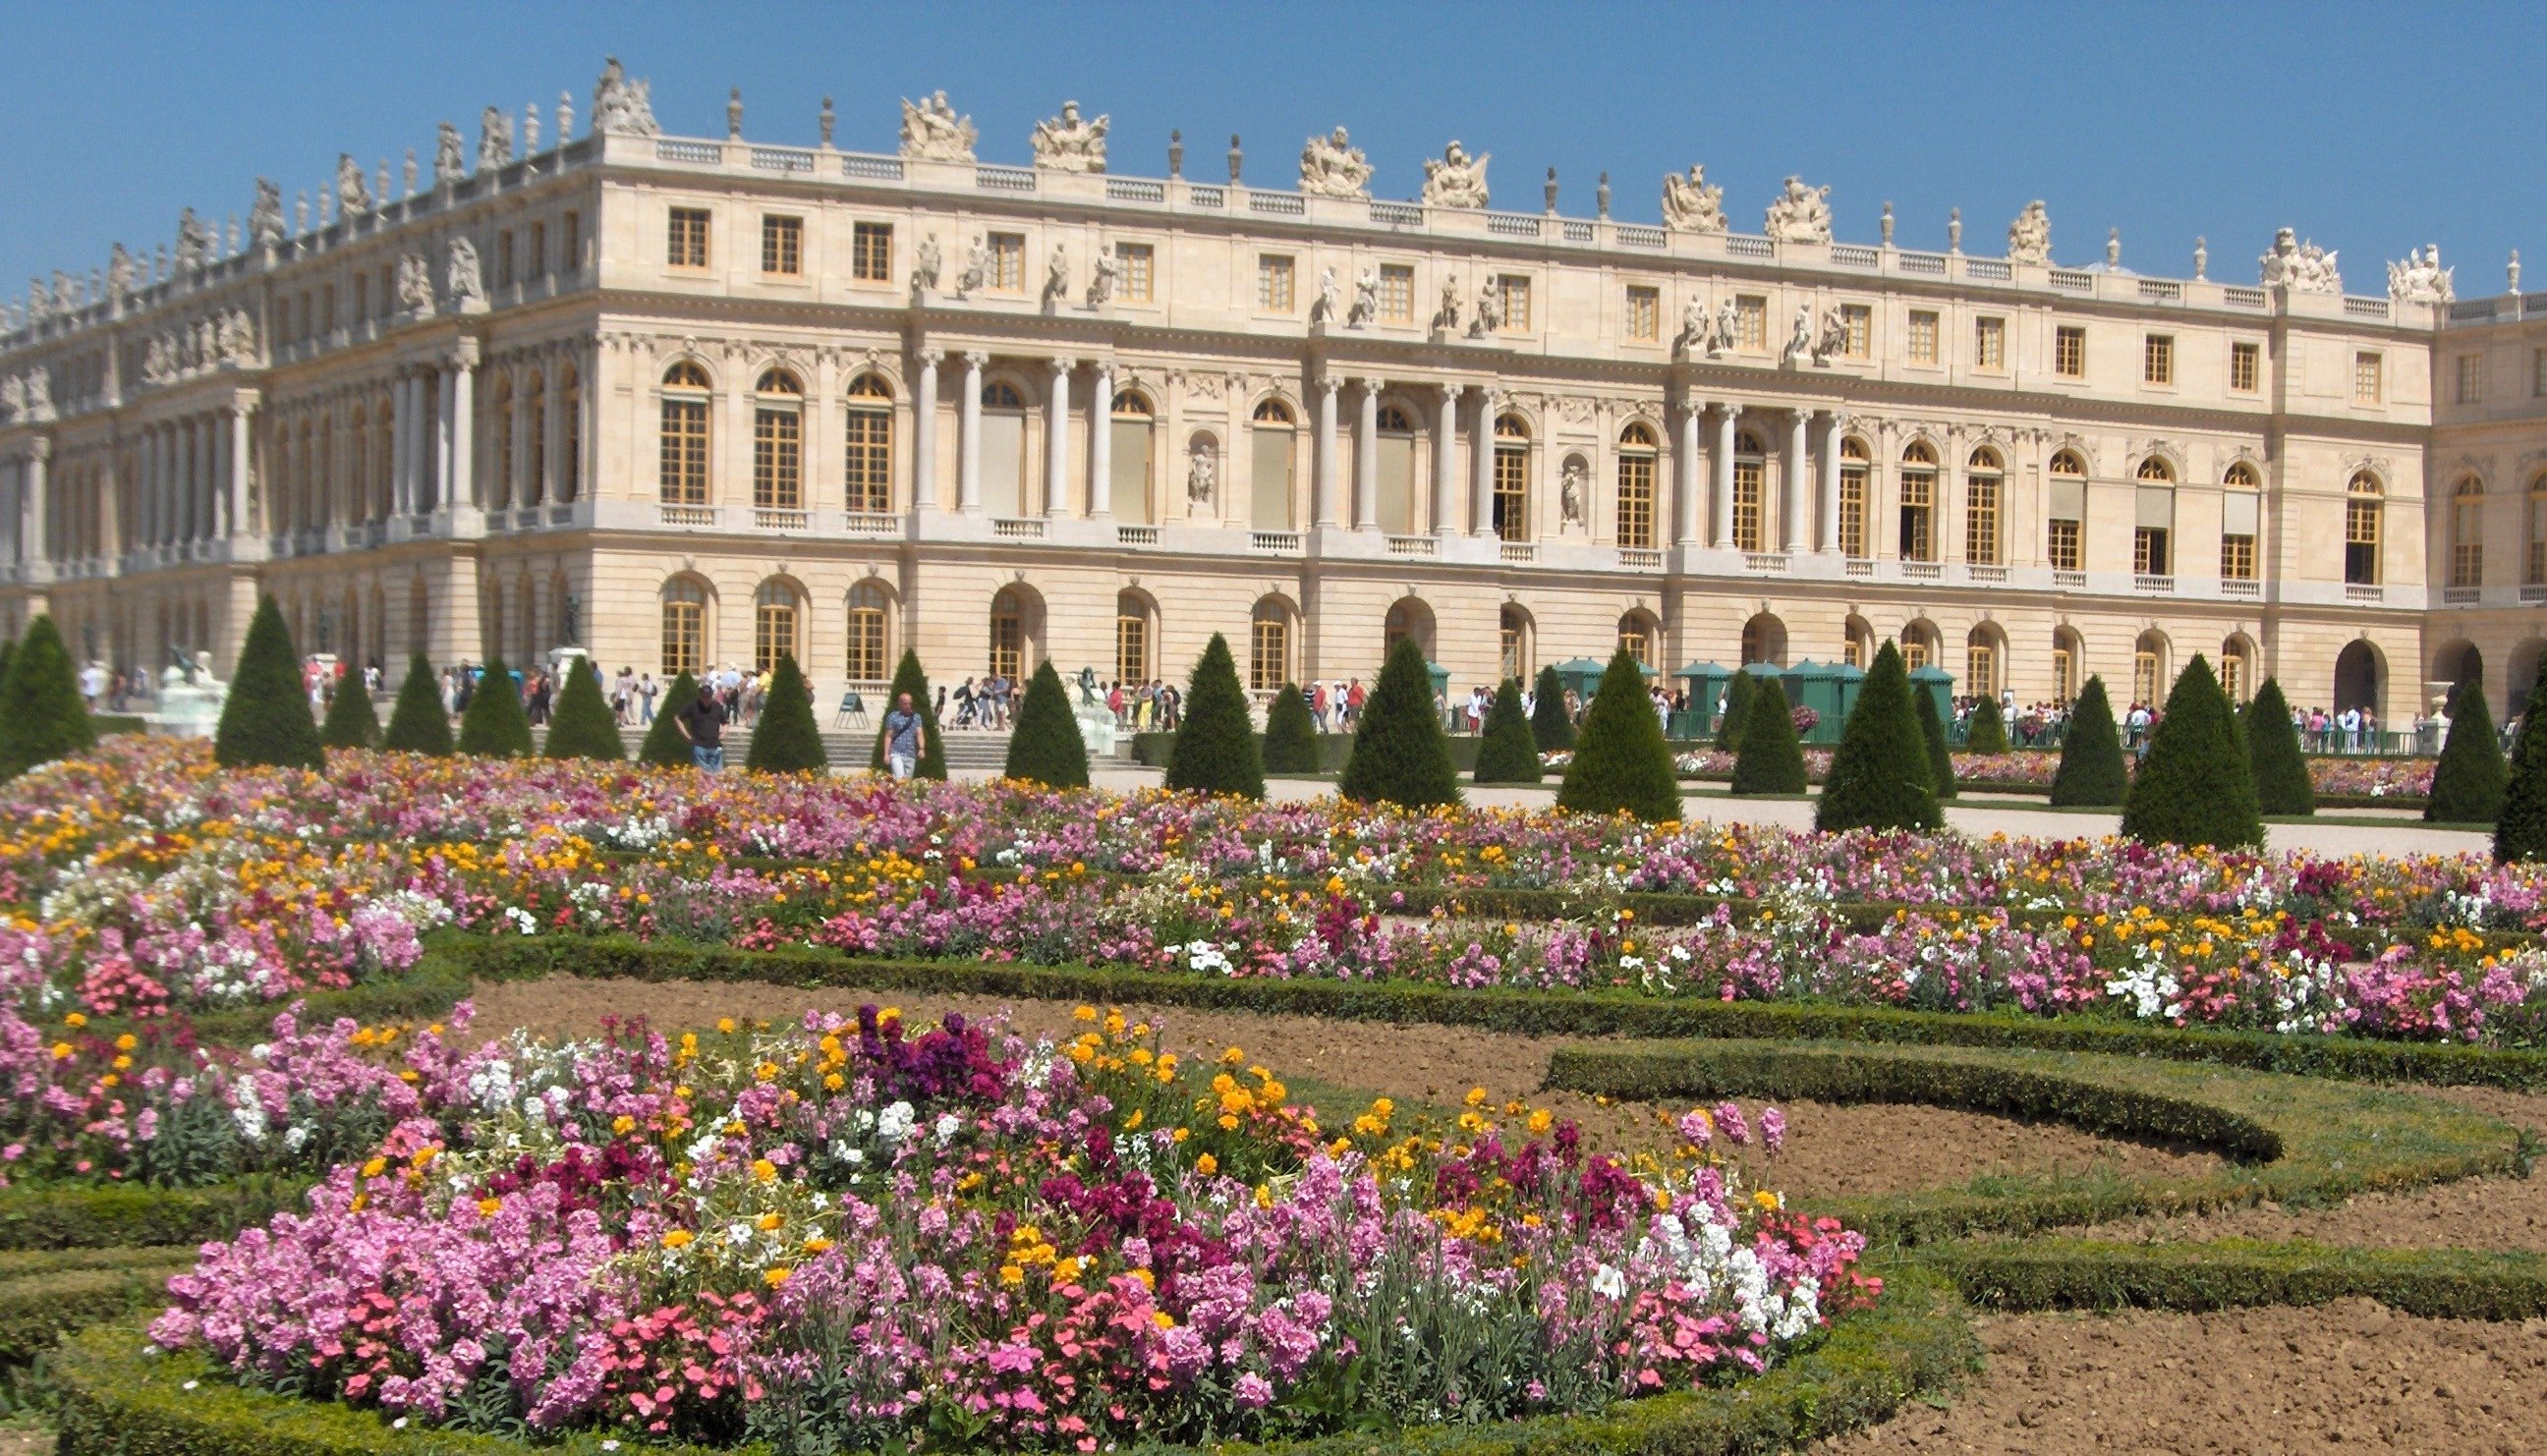 Версальский дворец дворцы Франции. Дворец Версаль версальный парк. Замок Версаль (Chateau de Versailles). Мраморный двор Версальского дворца. Chateau de versailles